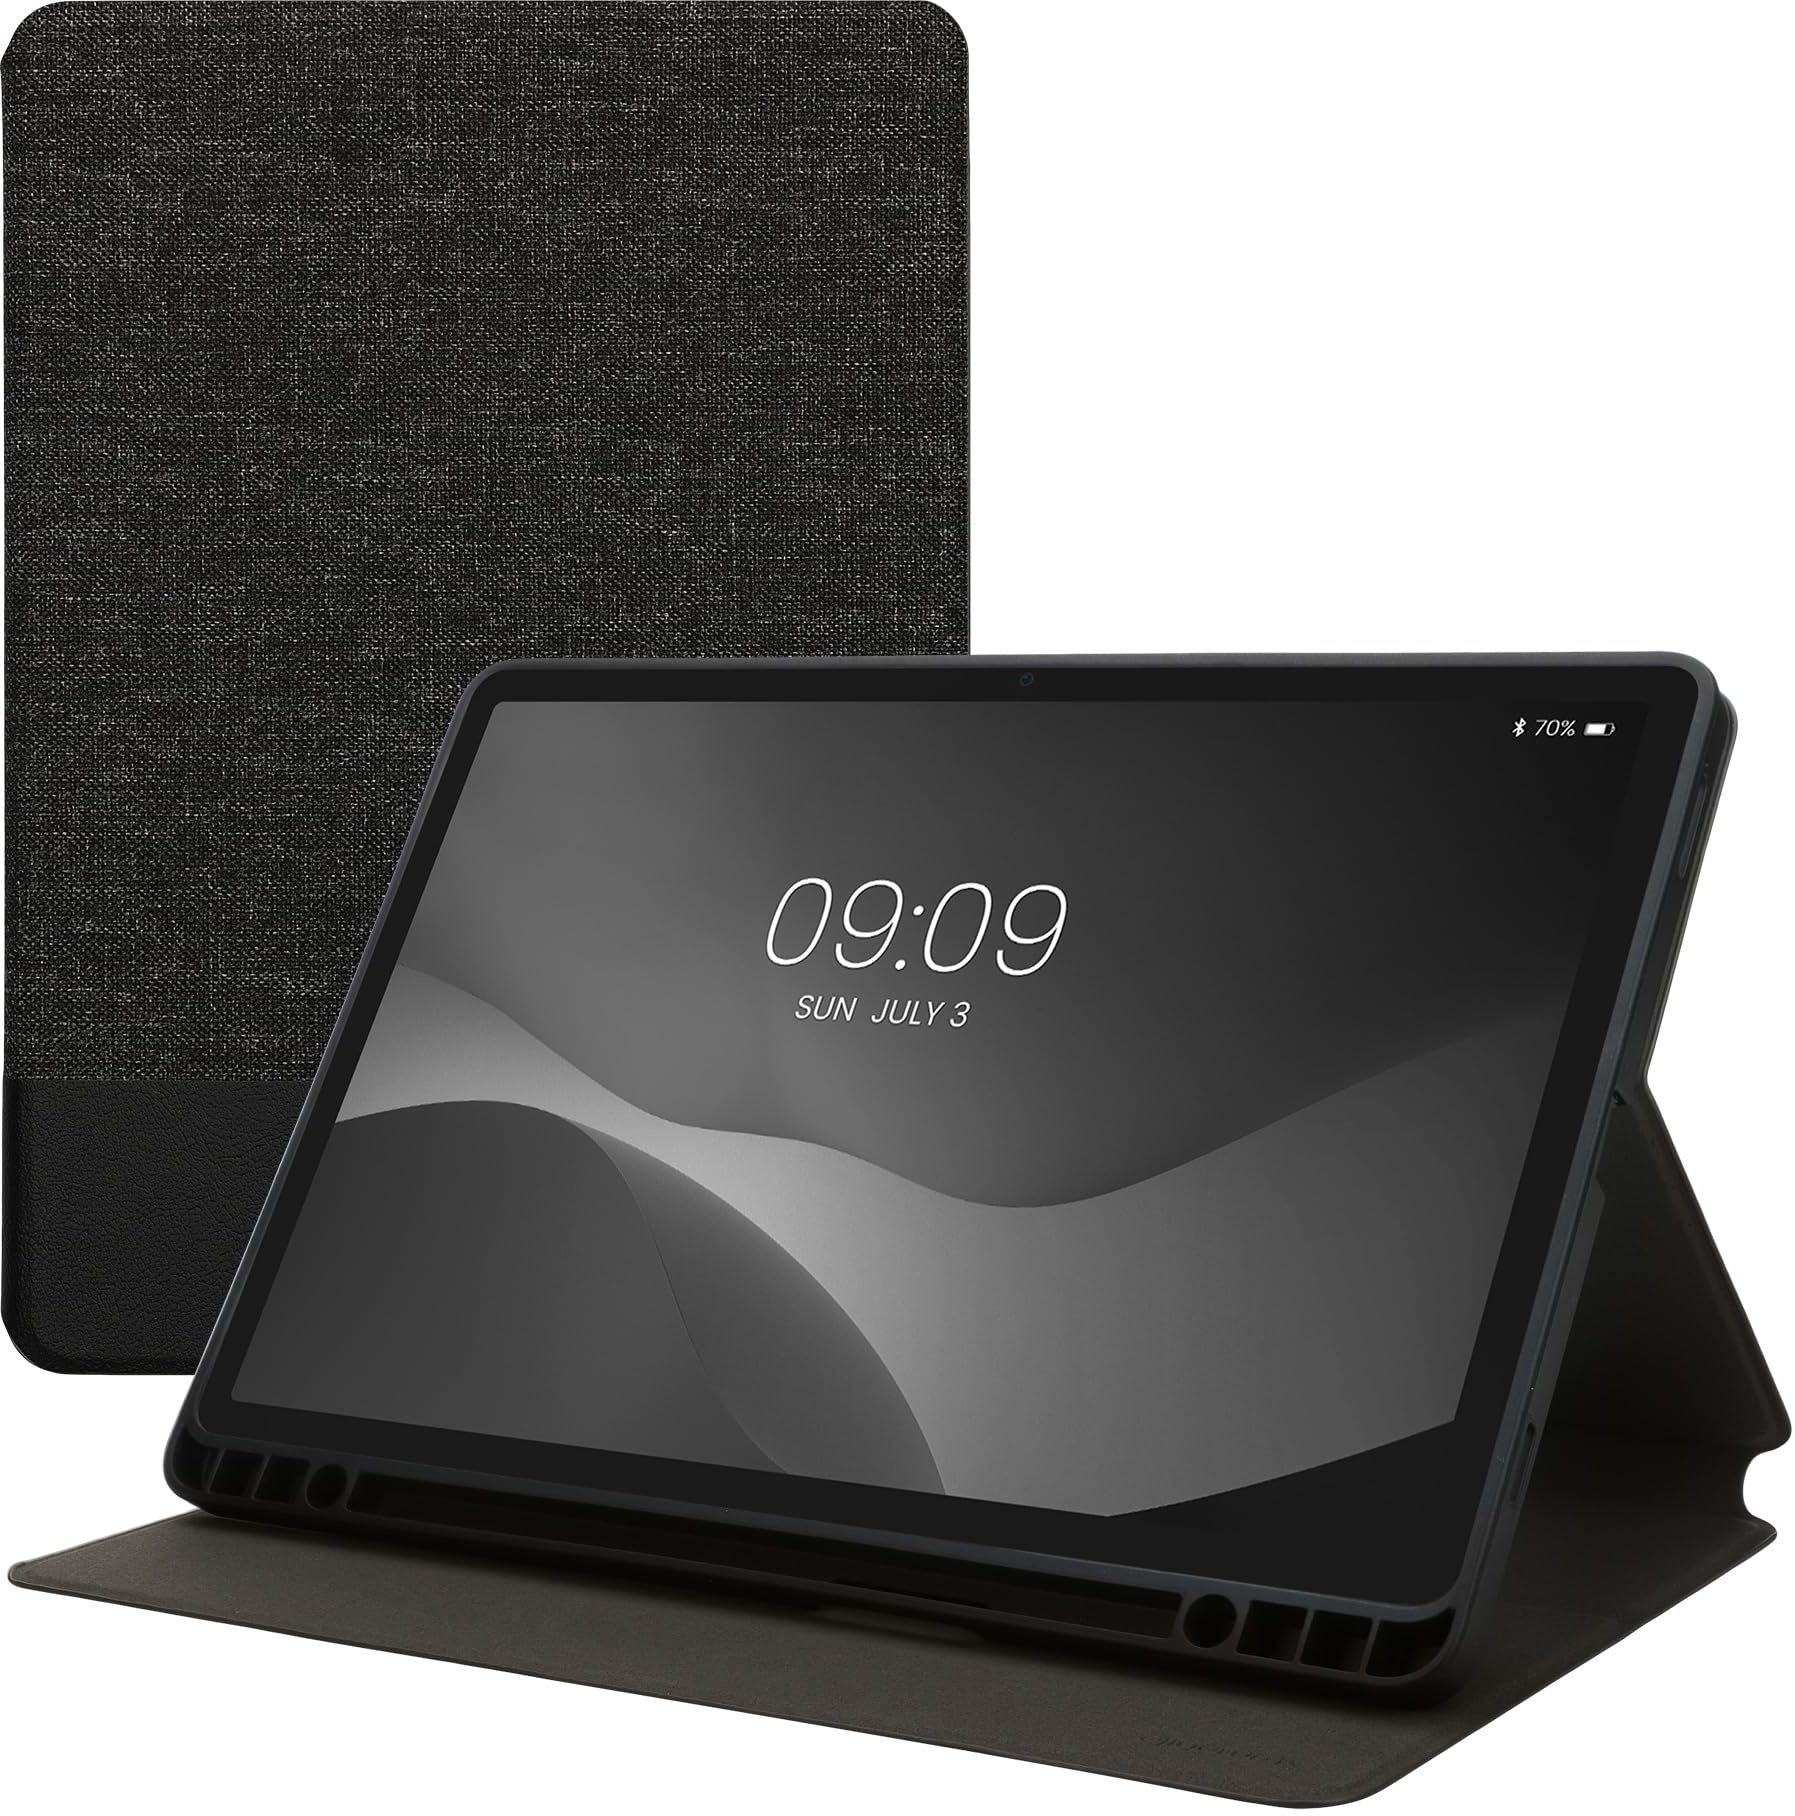 kwmobile Schutzhülle kompatibel mit Samsung s9 FE - Hülle Slim - Tablet Cover Case mit Ständer Dunkelgrau Schwarz